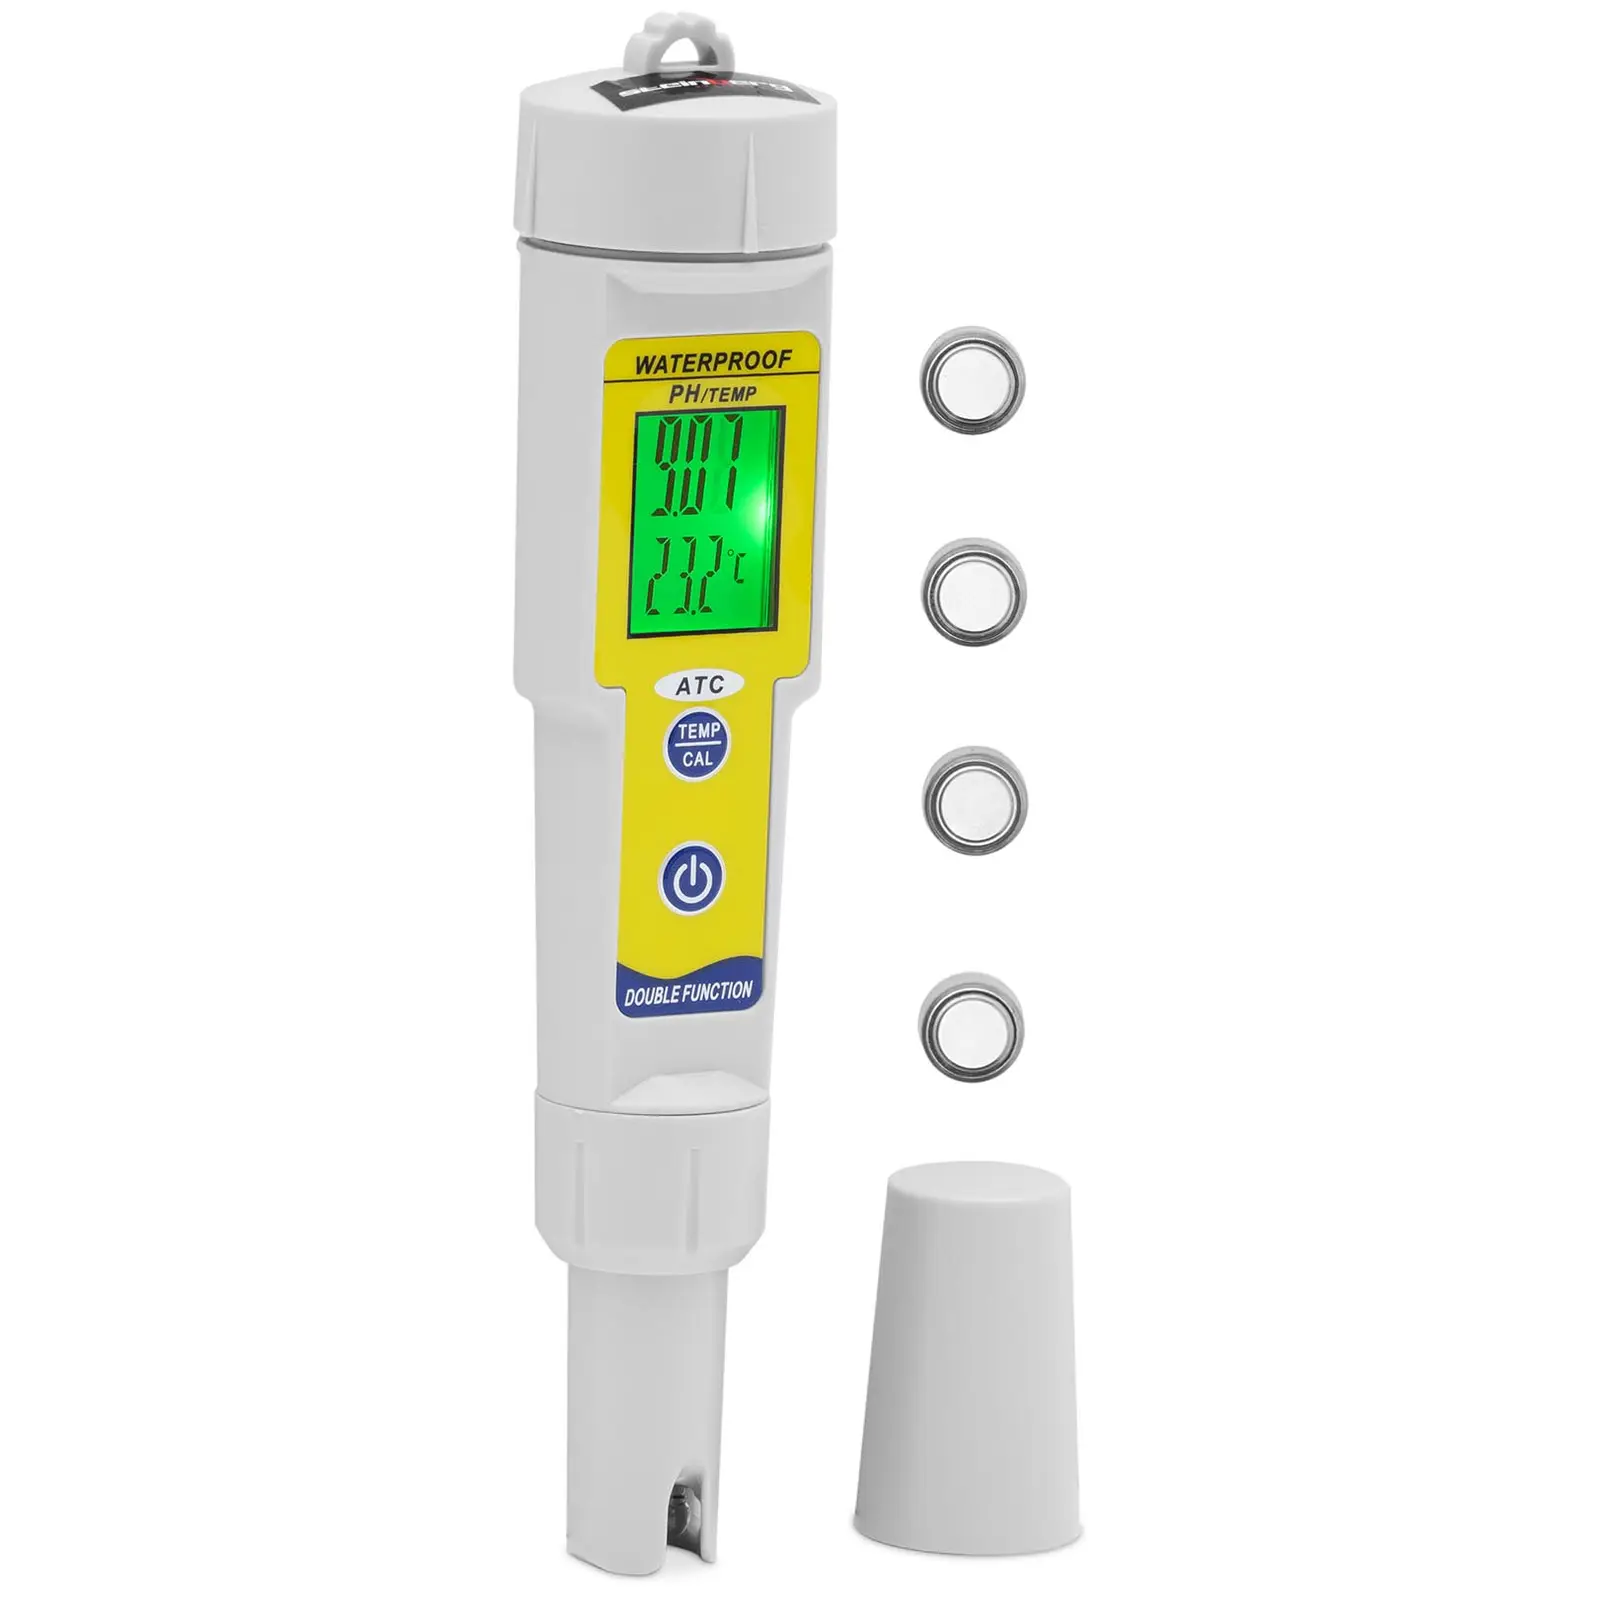 pH Meter with temperature measurement - LCD - 0-14 pH / Temperature 0 - 50 °C